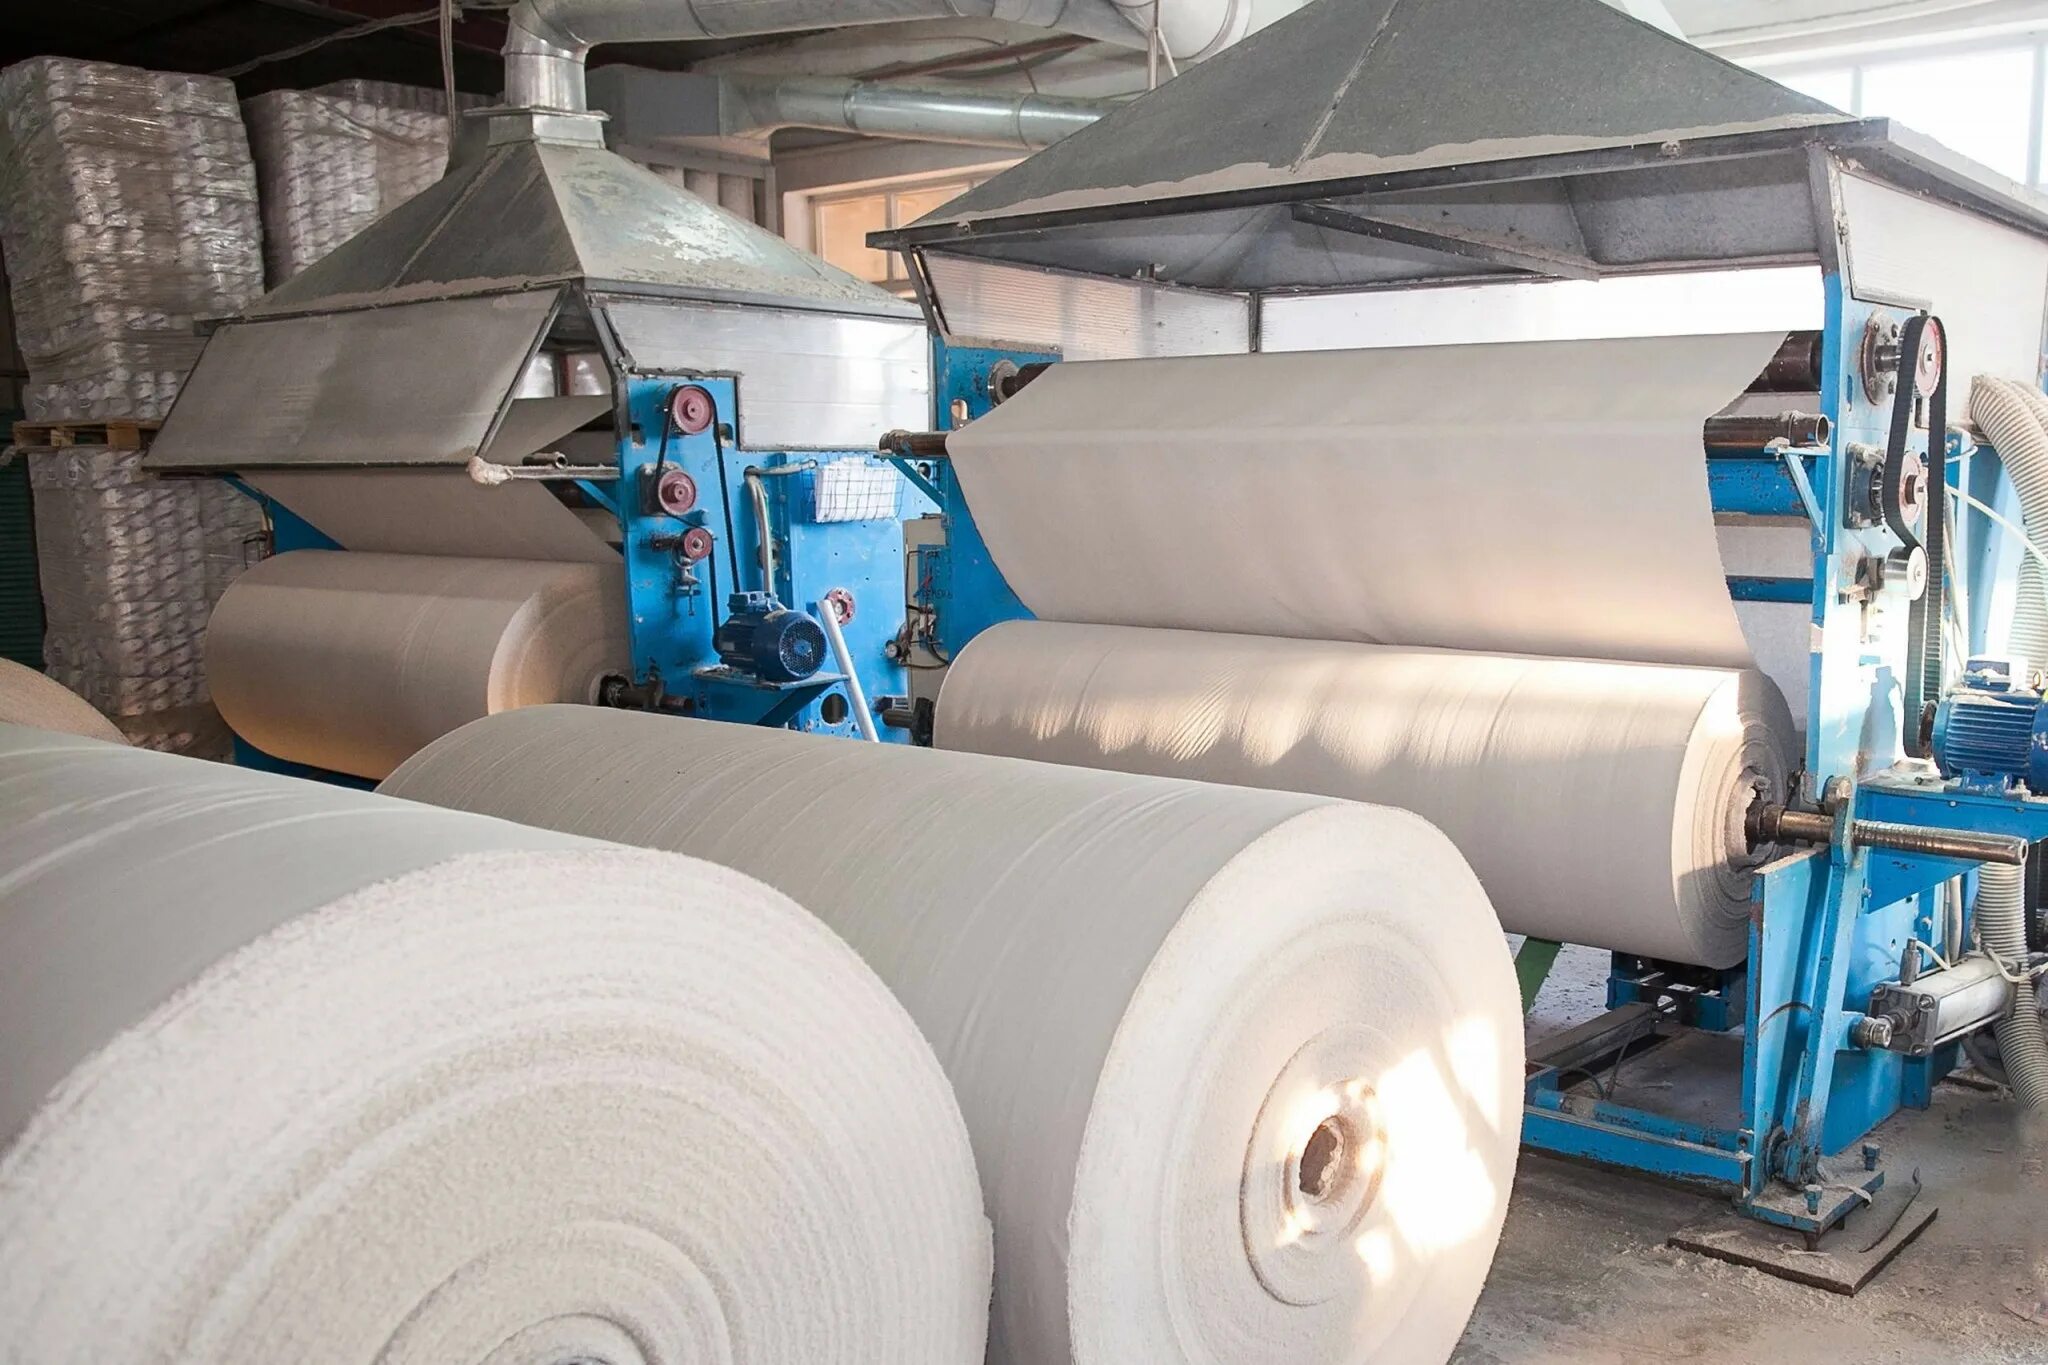 Завод по производству бумаги. Производство целлюлозы. Бумажная промышленность. Производство бумаги. Бумага из целлюлозы.